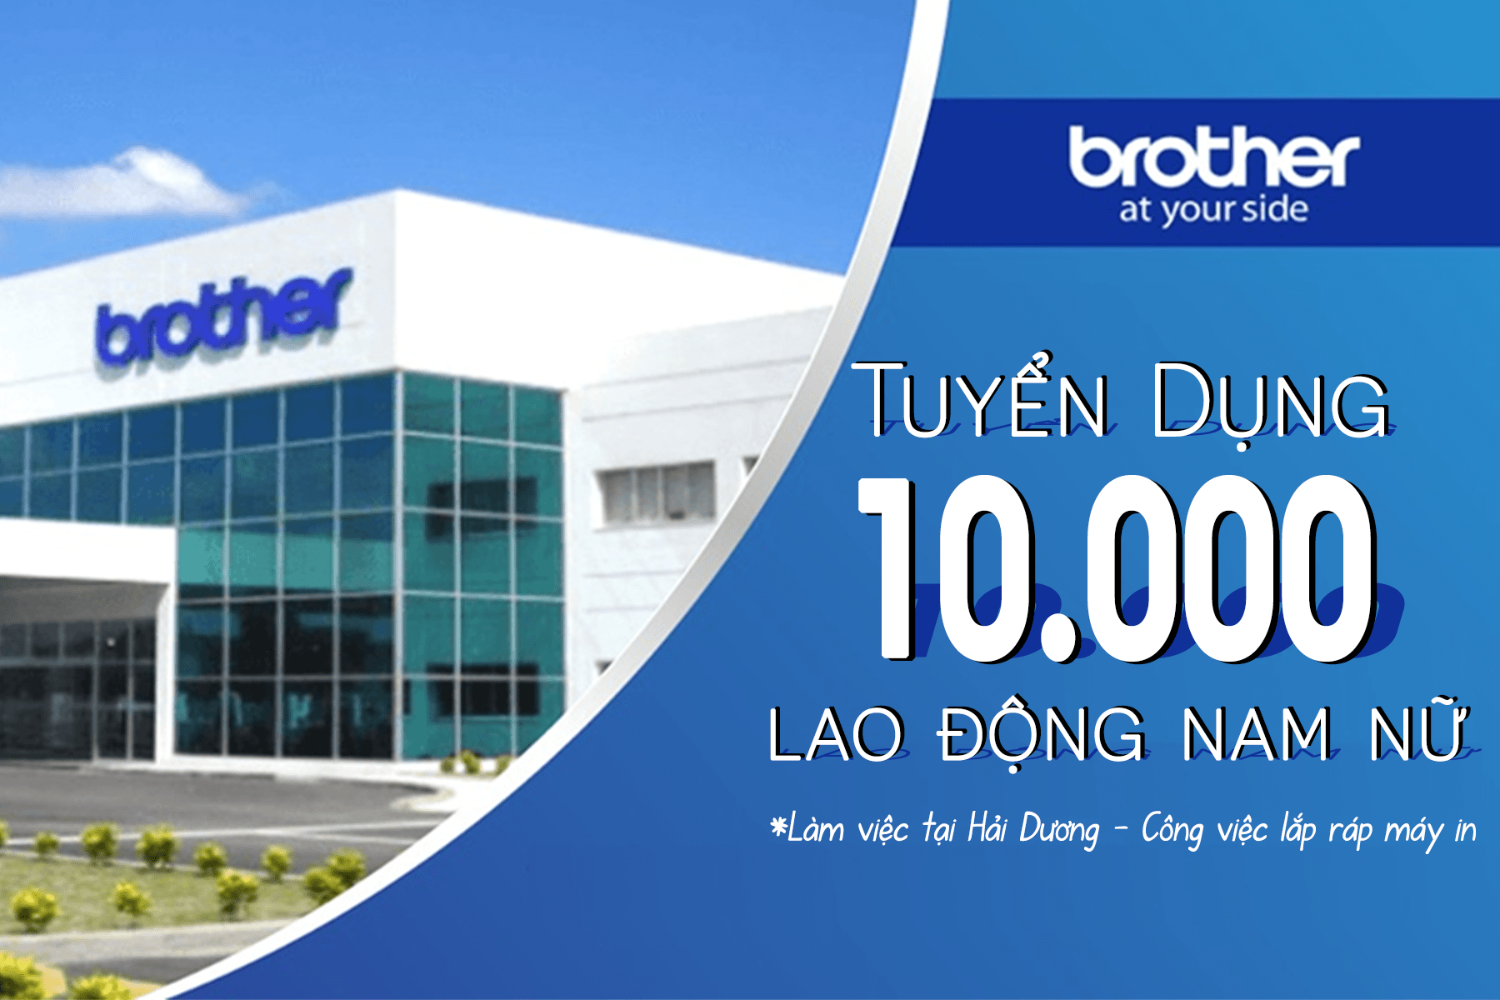 Công ty TNHH Công nghiệp Brother Việt Nam tuyển dụng công nhân lắp ráp linh kiện điện tử